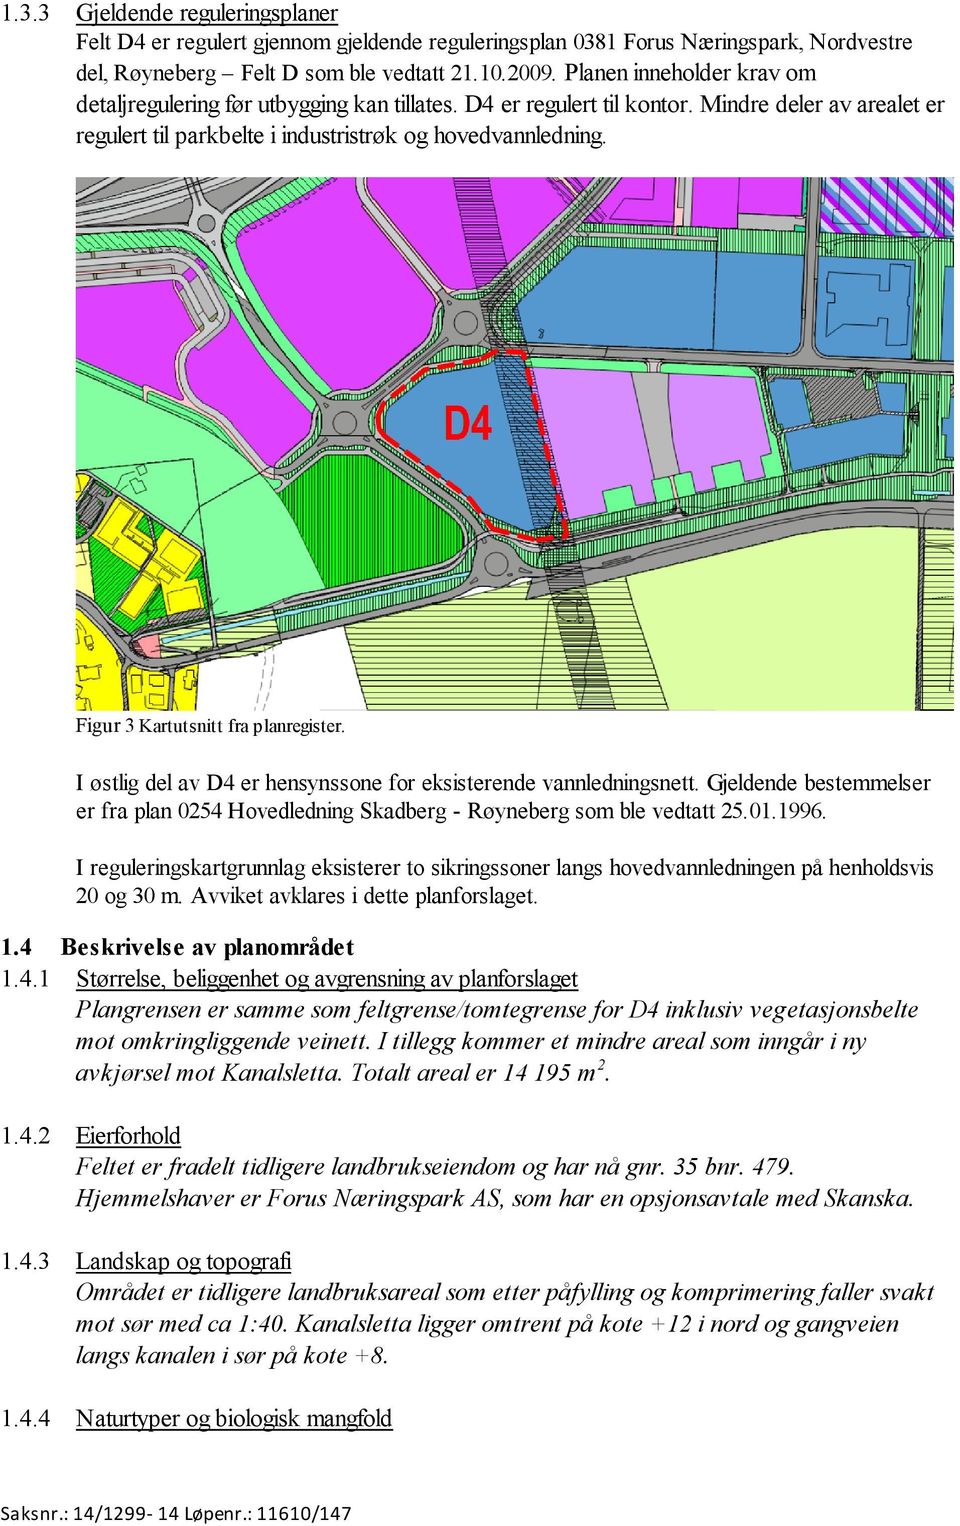 Figur 3 Kartutsnitt fra planregister. I østlig del av D4 er hensynssone for eksisterende vannledningsnett. Gjeldende bestemmelser er fra plan 0254 Hovedledning Skadberg - Røyneberg som ble vedtatt 25.